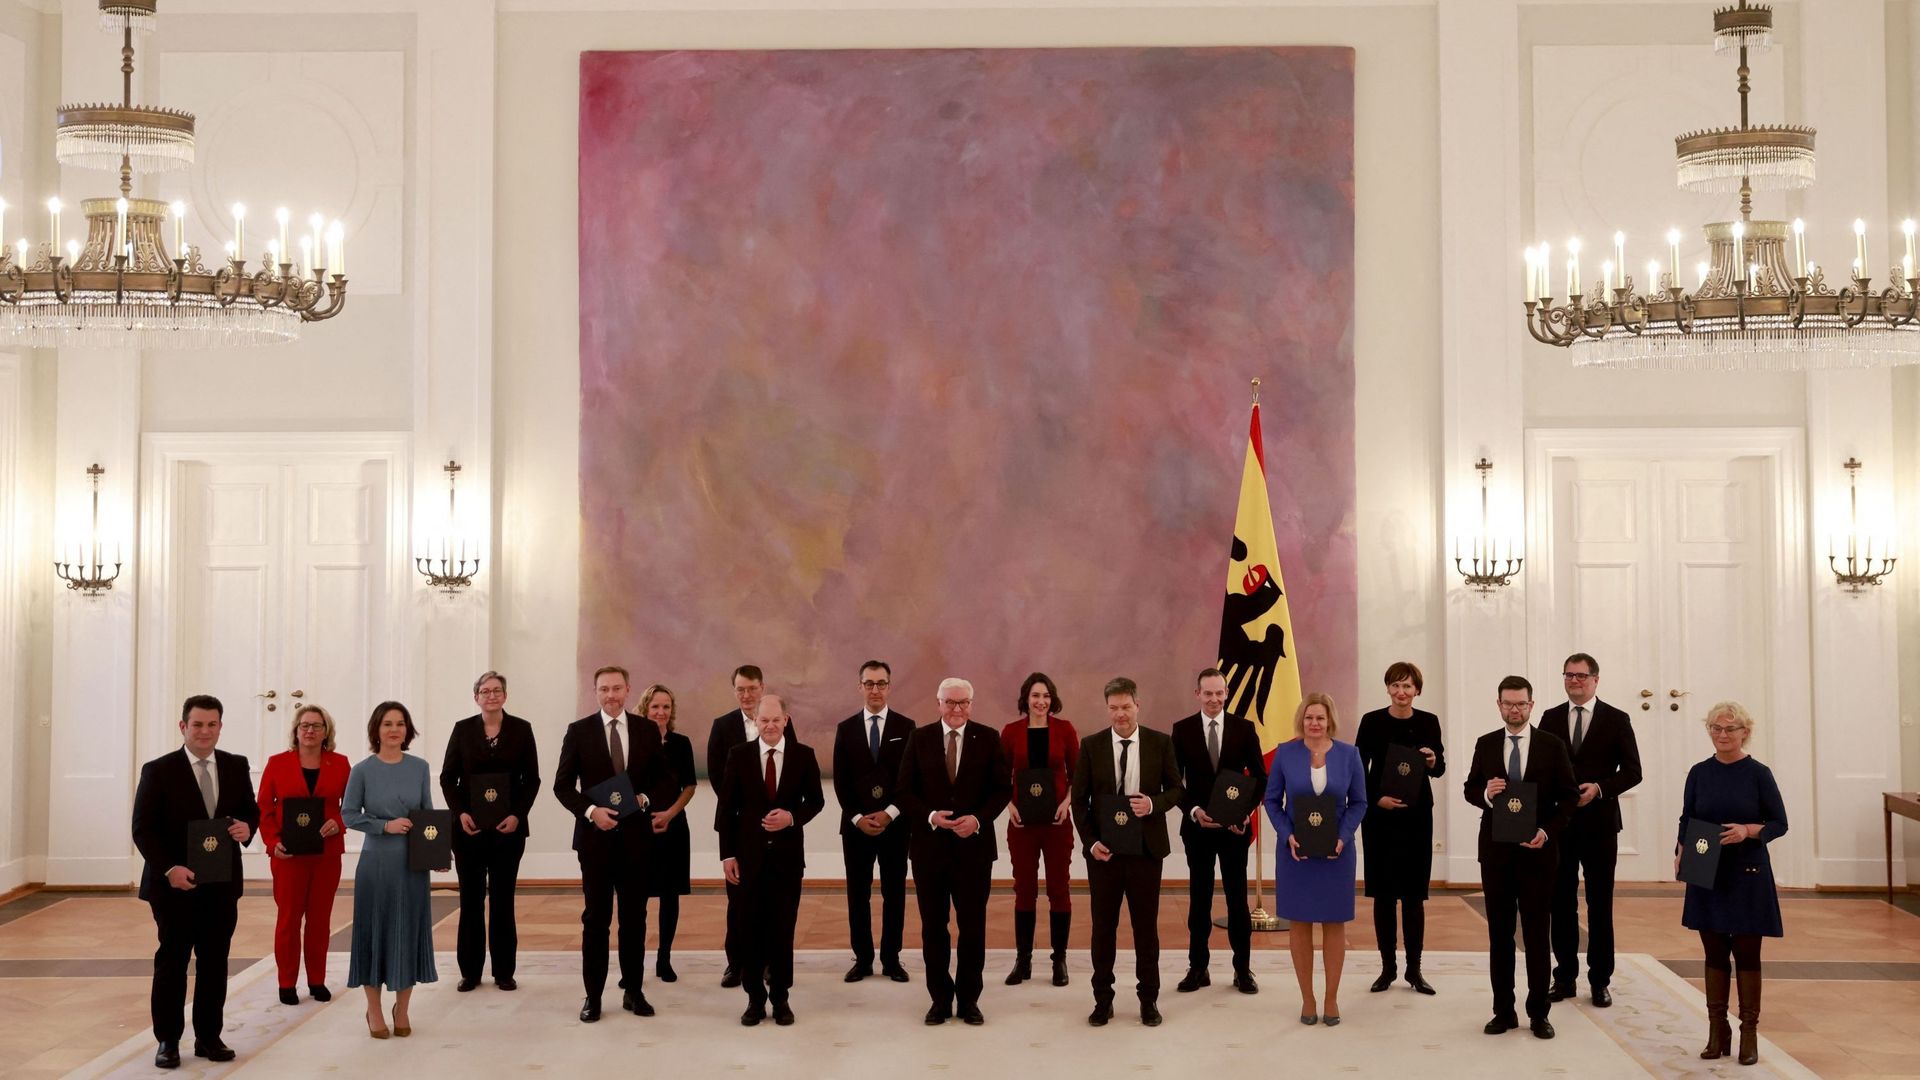 Le nouveau chancelier et le président allemands posent avec les ministres du nouveau gouvernement.